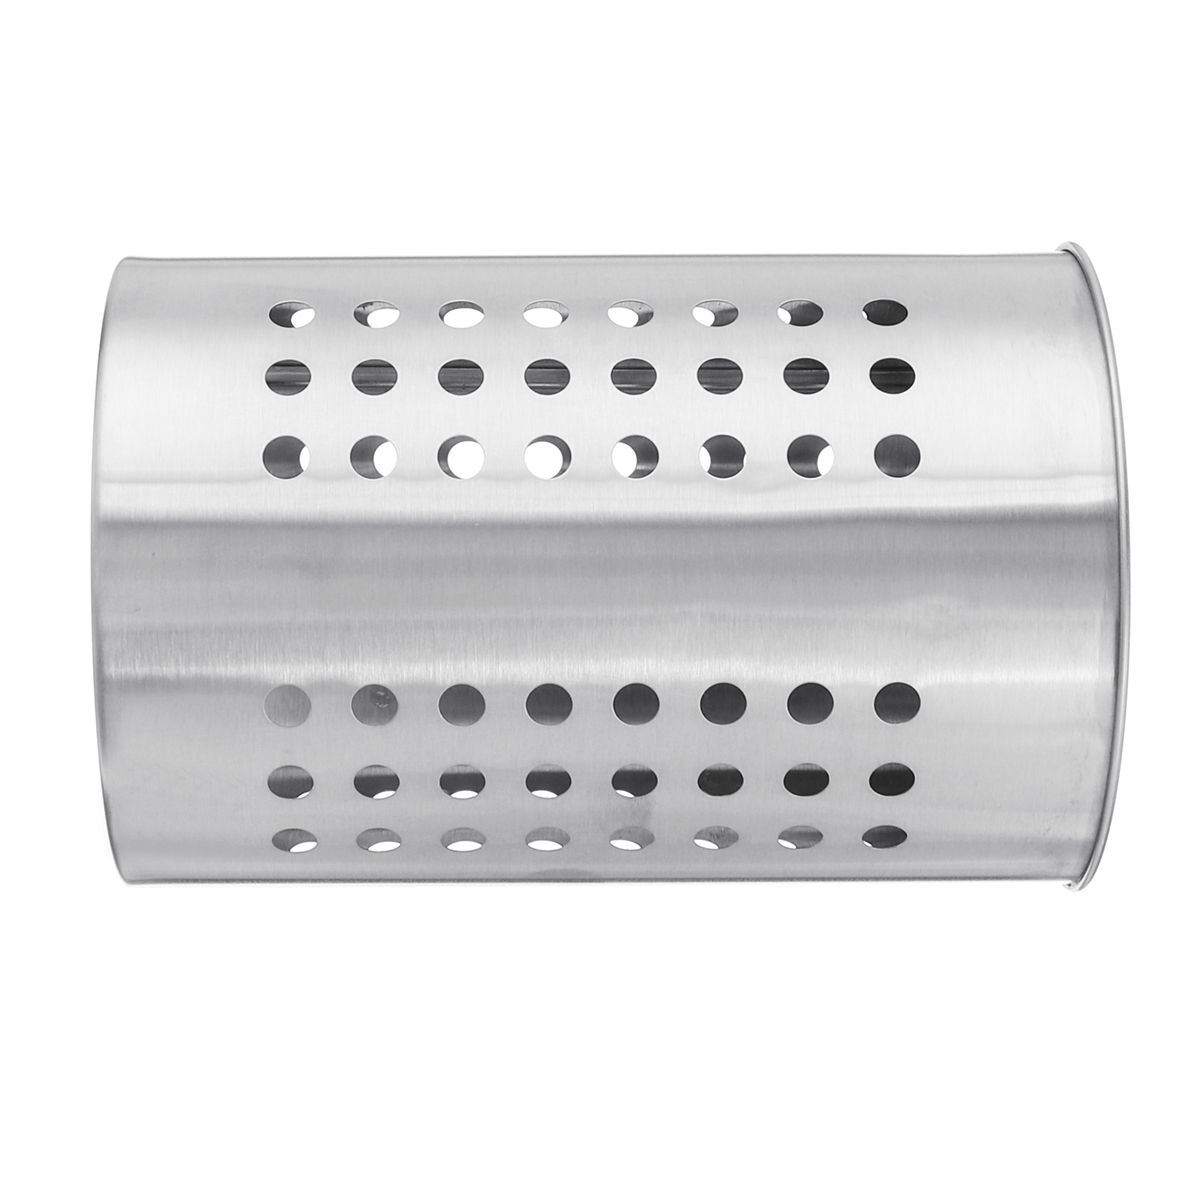 12x18cm-Stainless-Steel-Chopsticks-Organizer-Drain-Basket-Rack-Kitchen-Tableware-Storage-Holder-1331779